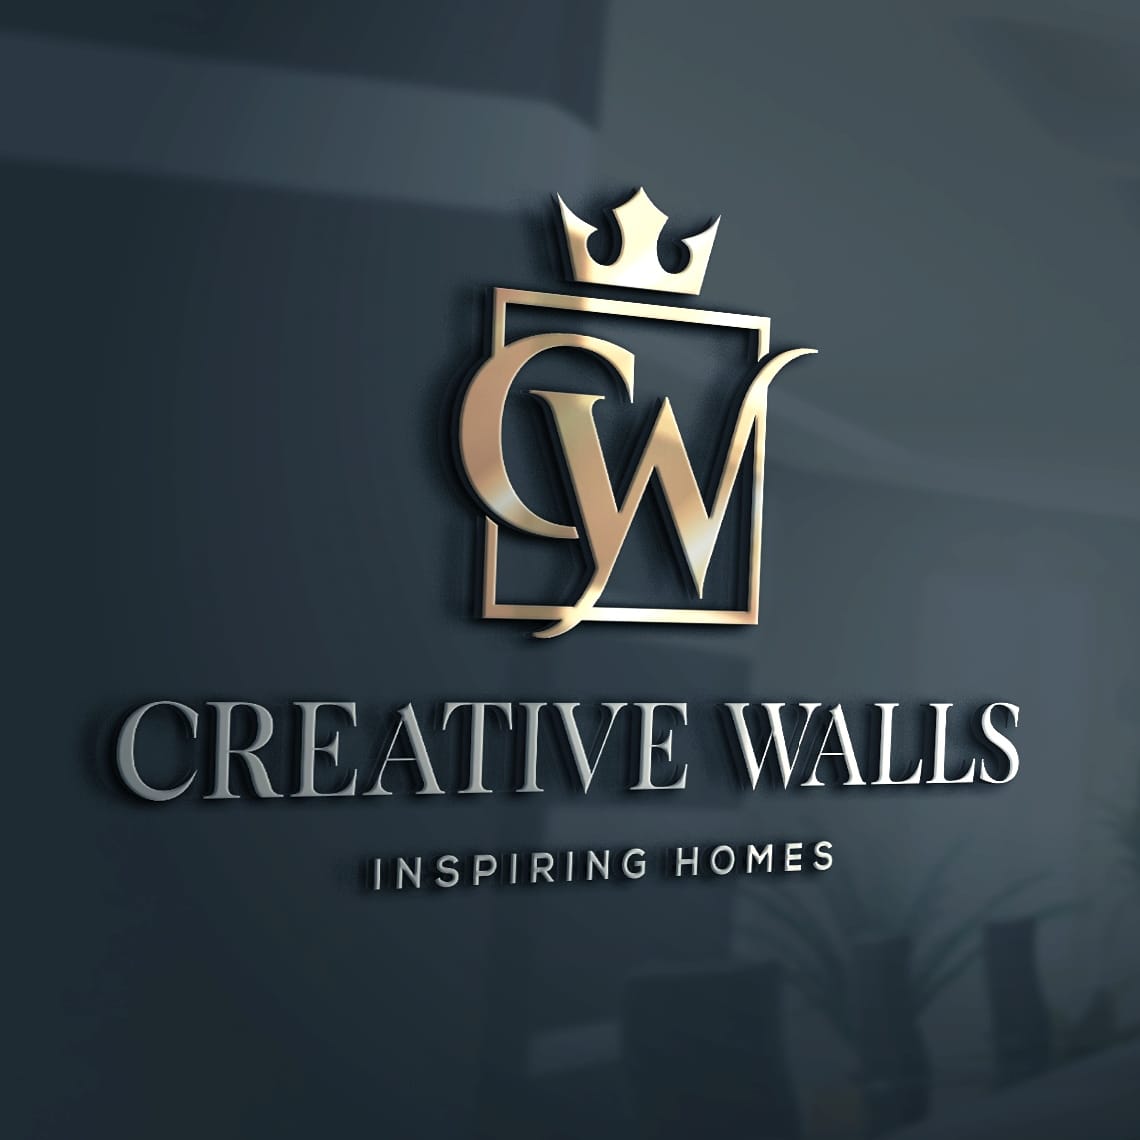 Creative walls interiors Logo